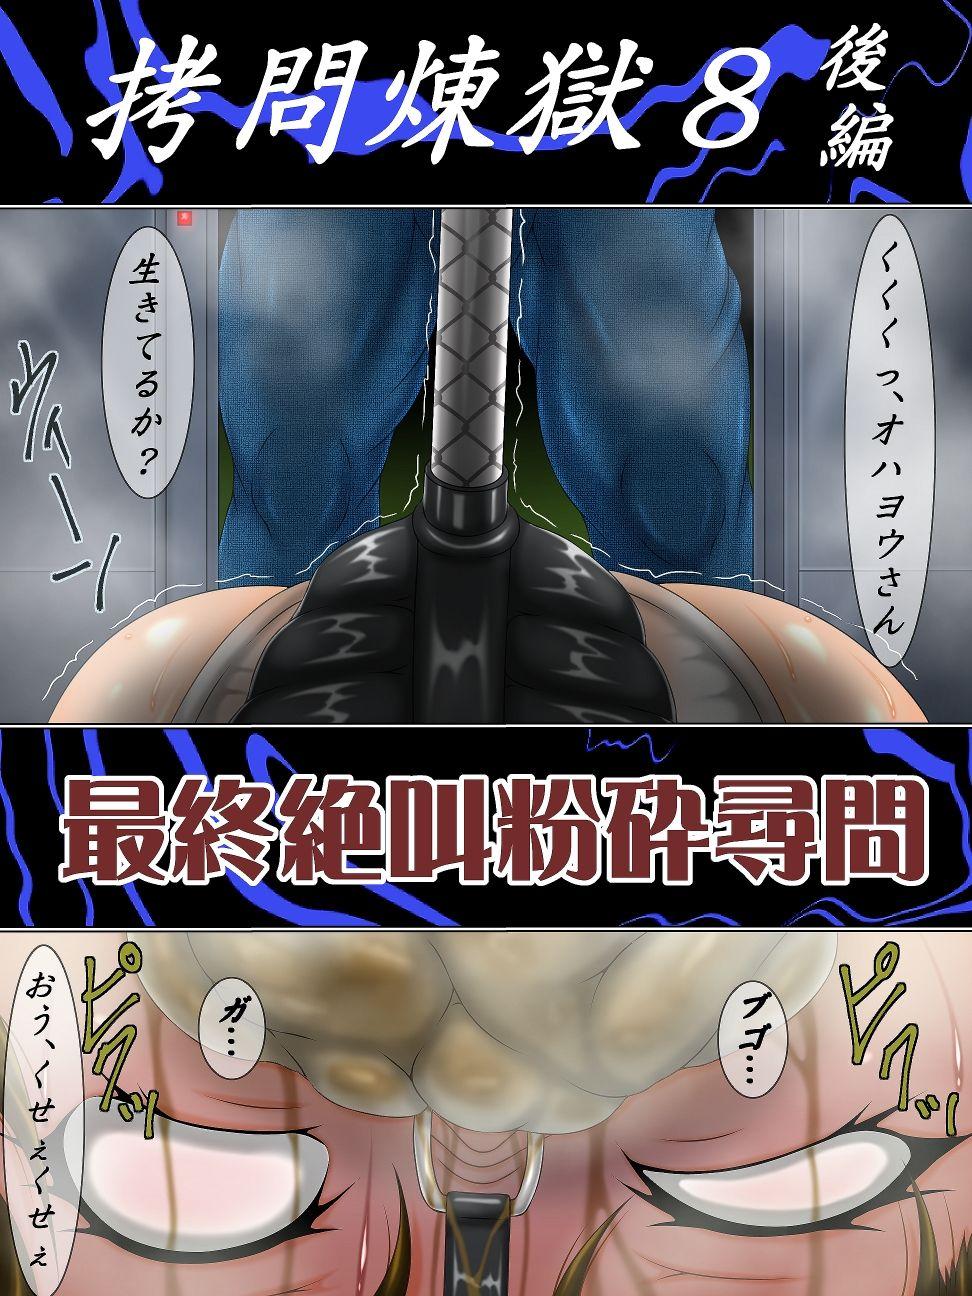 Nasty Free Porn Gōmon rengoku 8 kōhen saishū zekkyō funsai jinmon - Final fantasy vii Pounded - Page 2